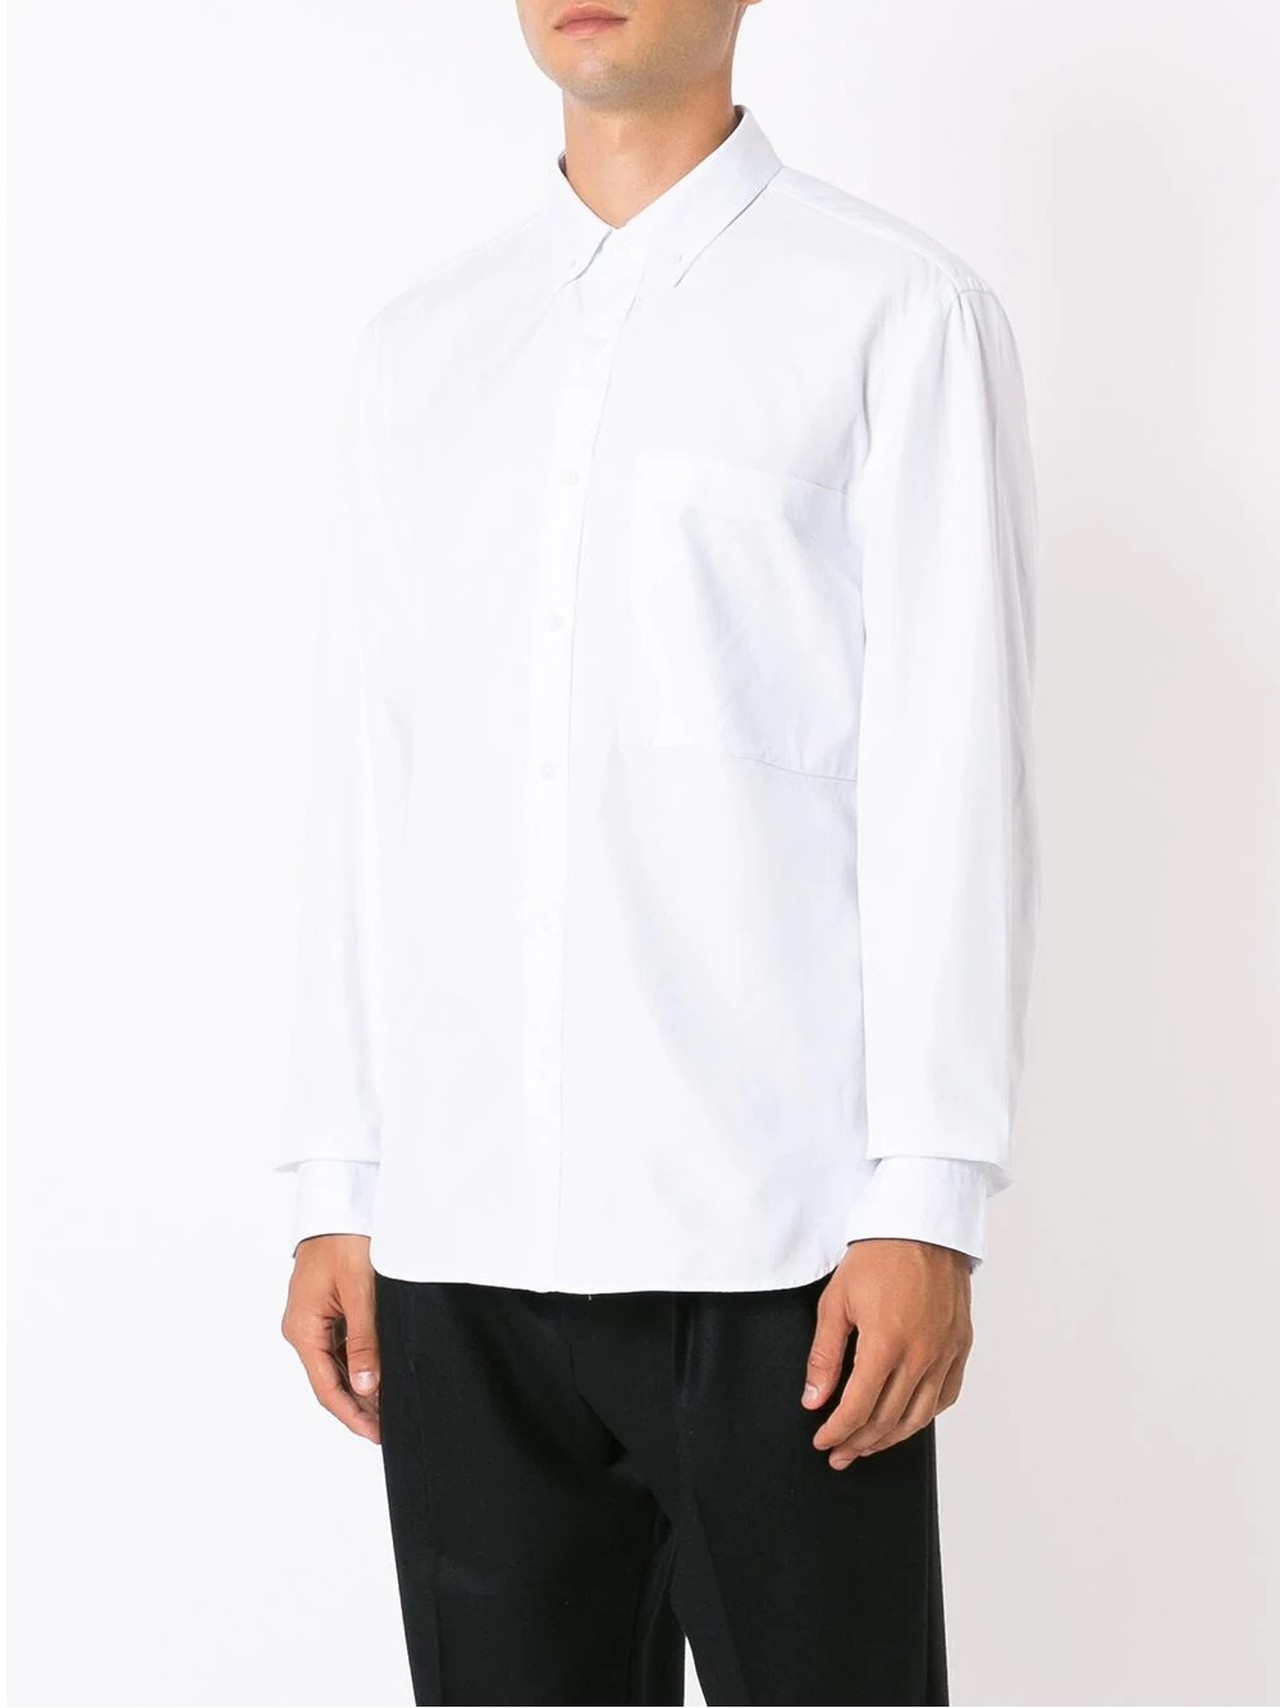 Camisa Esporte Colarinho Branca